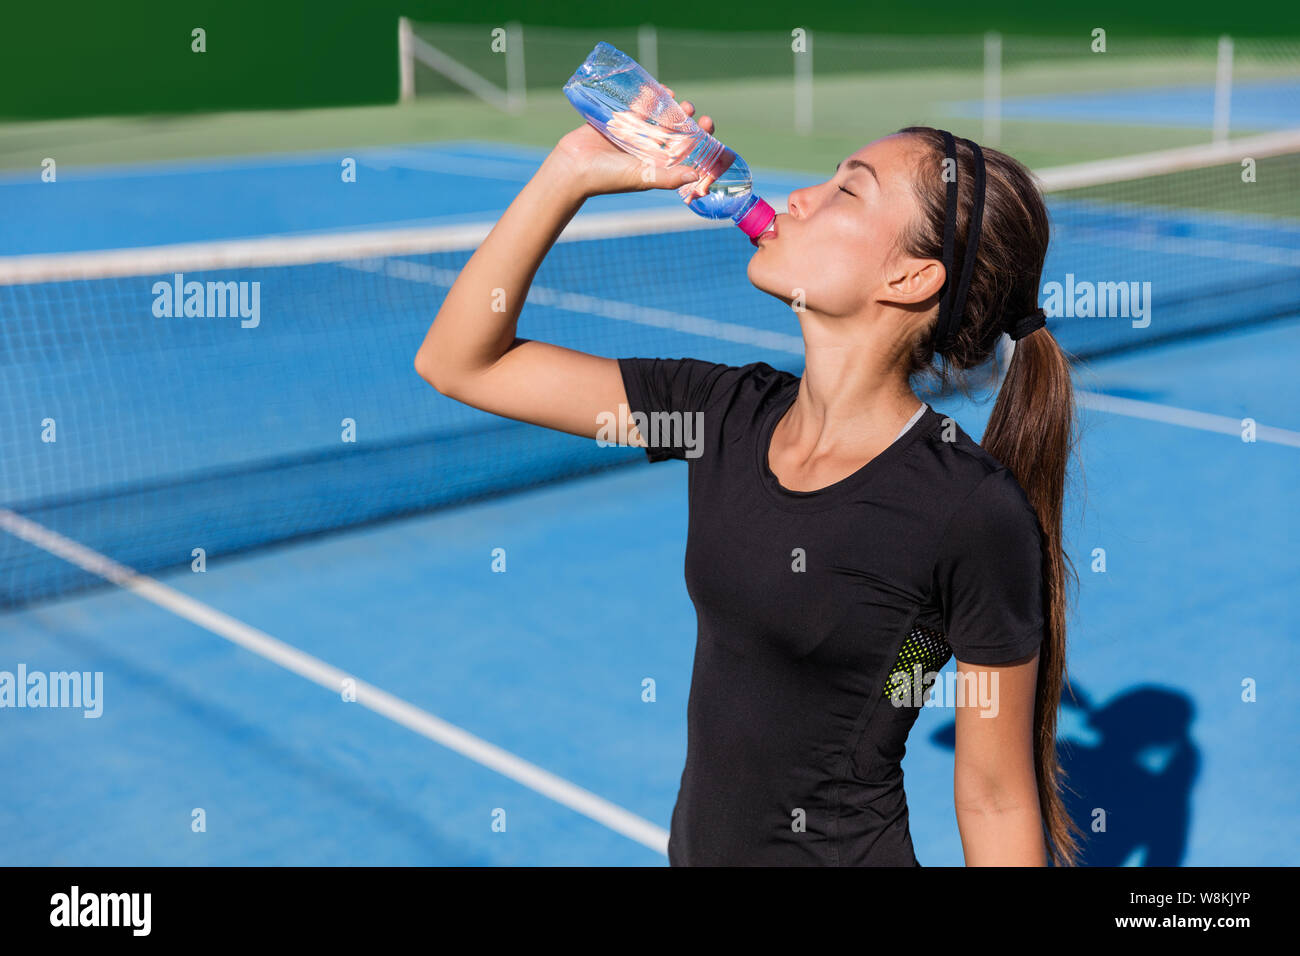 Joueur de tennis saine soif désaltérante de boire santé sport boire de l'eau bouteille plastique hydratant avant de jouer à un jeu sur bleu hardcourt. Athlète professionnel vivant une vie active mettre en place. Banque D'Images